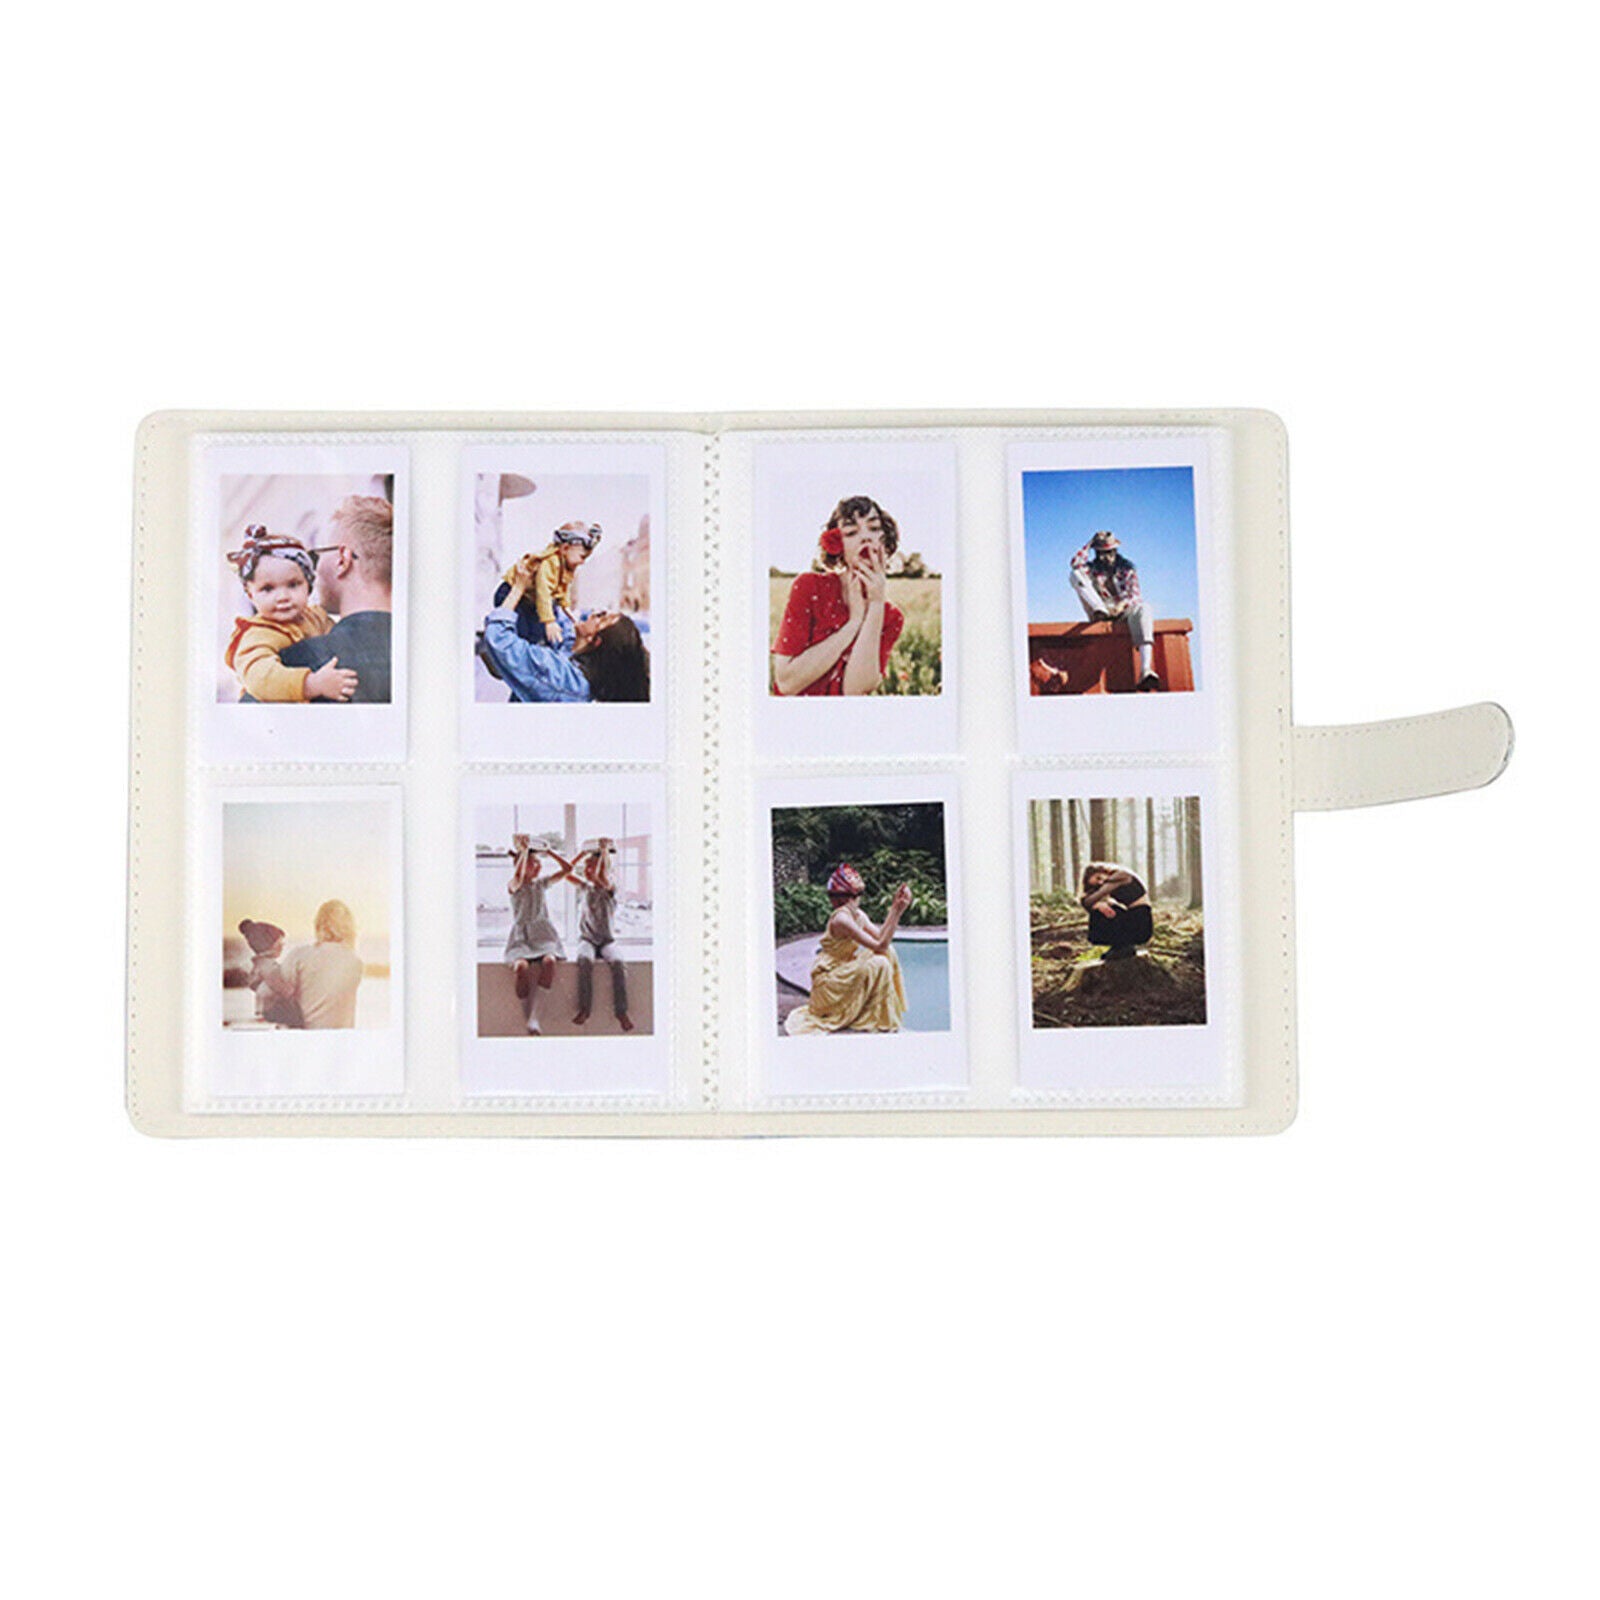 128 Pocket Mini Camera Photo Album Book for Instax Mini Fashion Colorful Mini